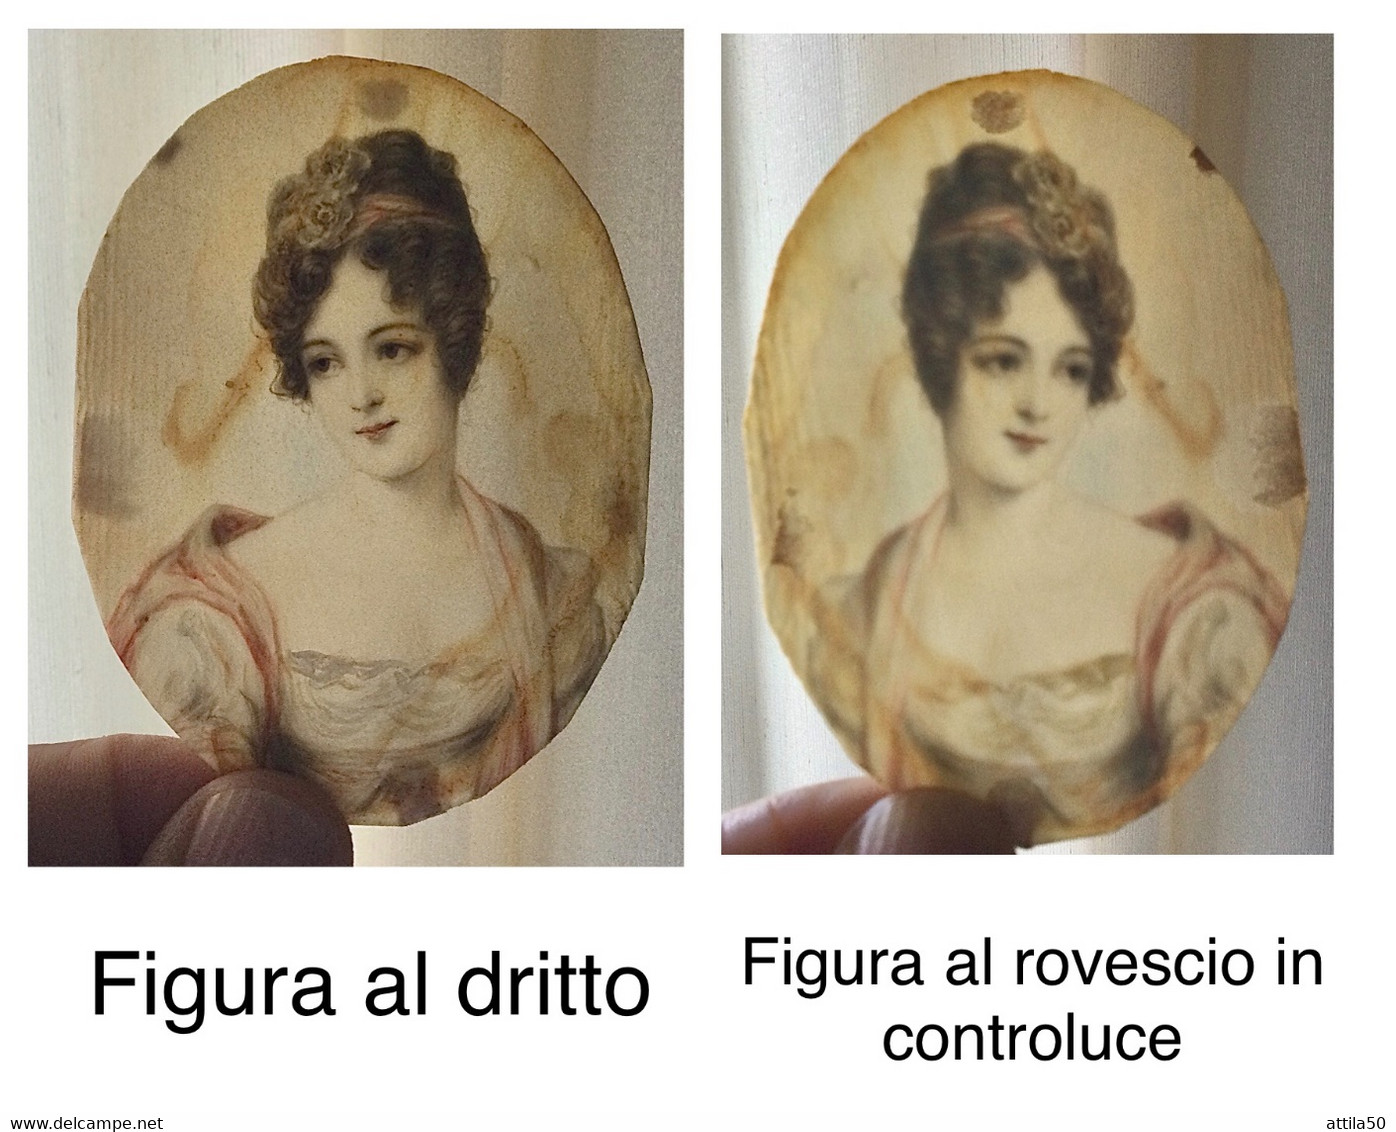 Miniatura Su Avorio ‘800 “Ritratto Di Donna” Bellissima E Rara Miniatura. Splendida Cornice Con Perle E Pietre Blu. - Prints & Engravings